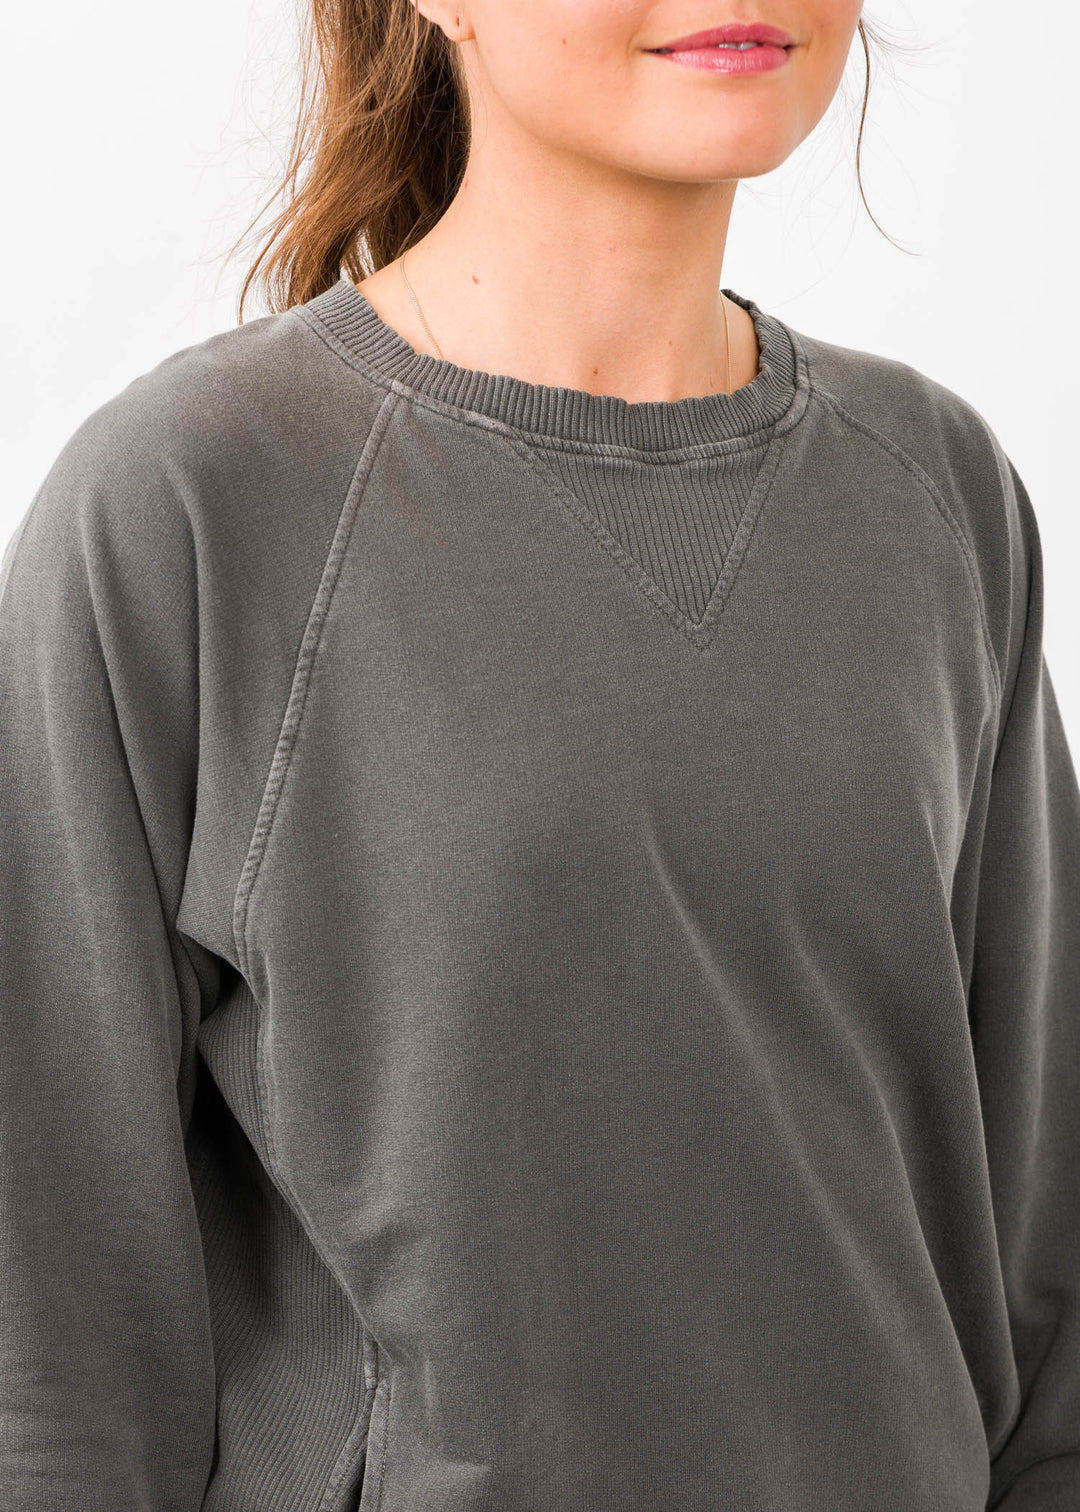 Zen French Terry Sweatshirt (Charcoal)